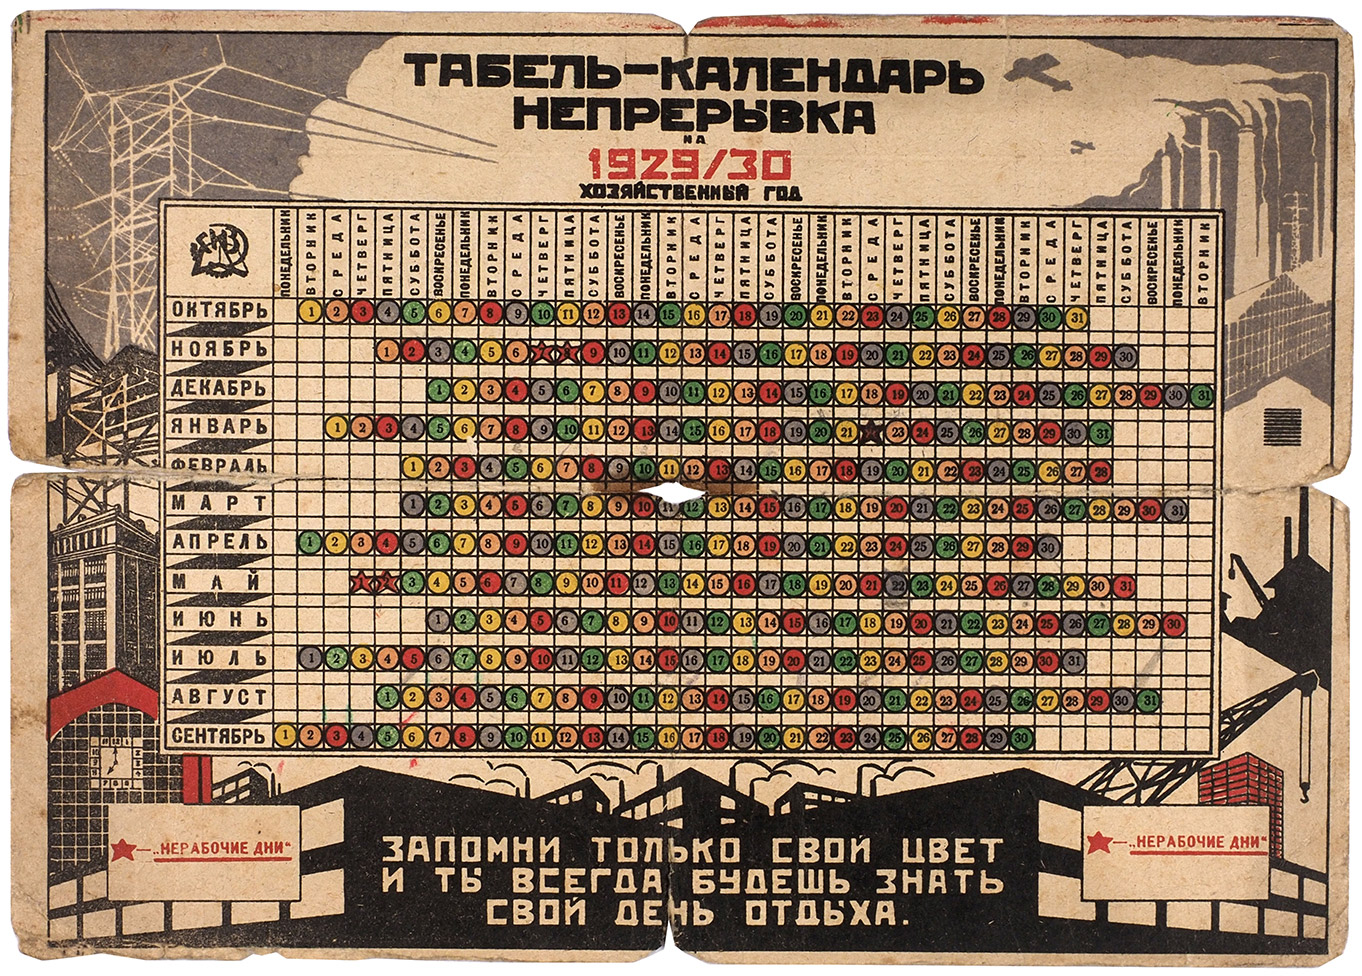 1929 год был назван годом. Советский календарь 1929 года. Табель календарь Непрерывка 1929/30. Советский революционный календарь. Календарь 1930.